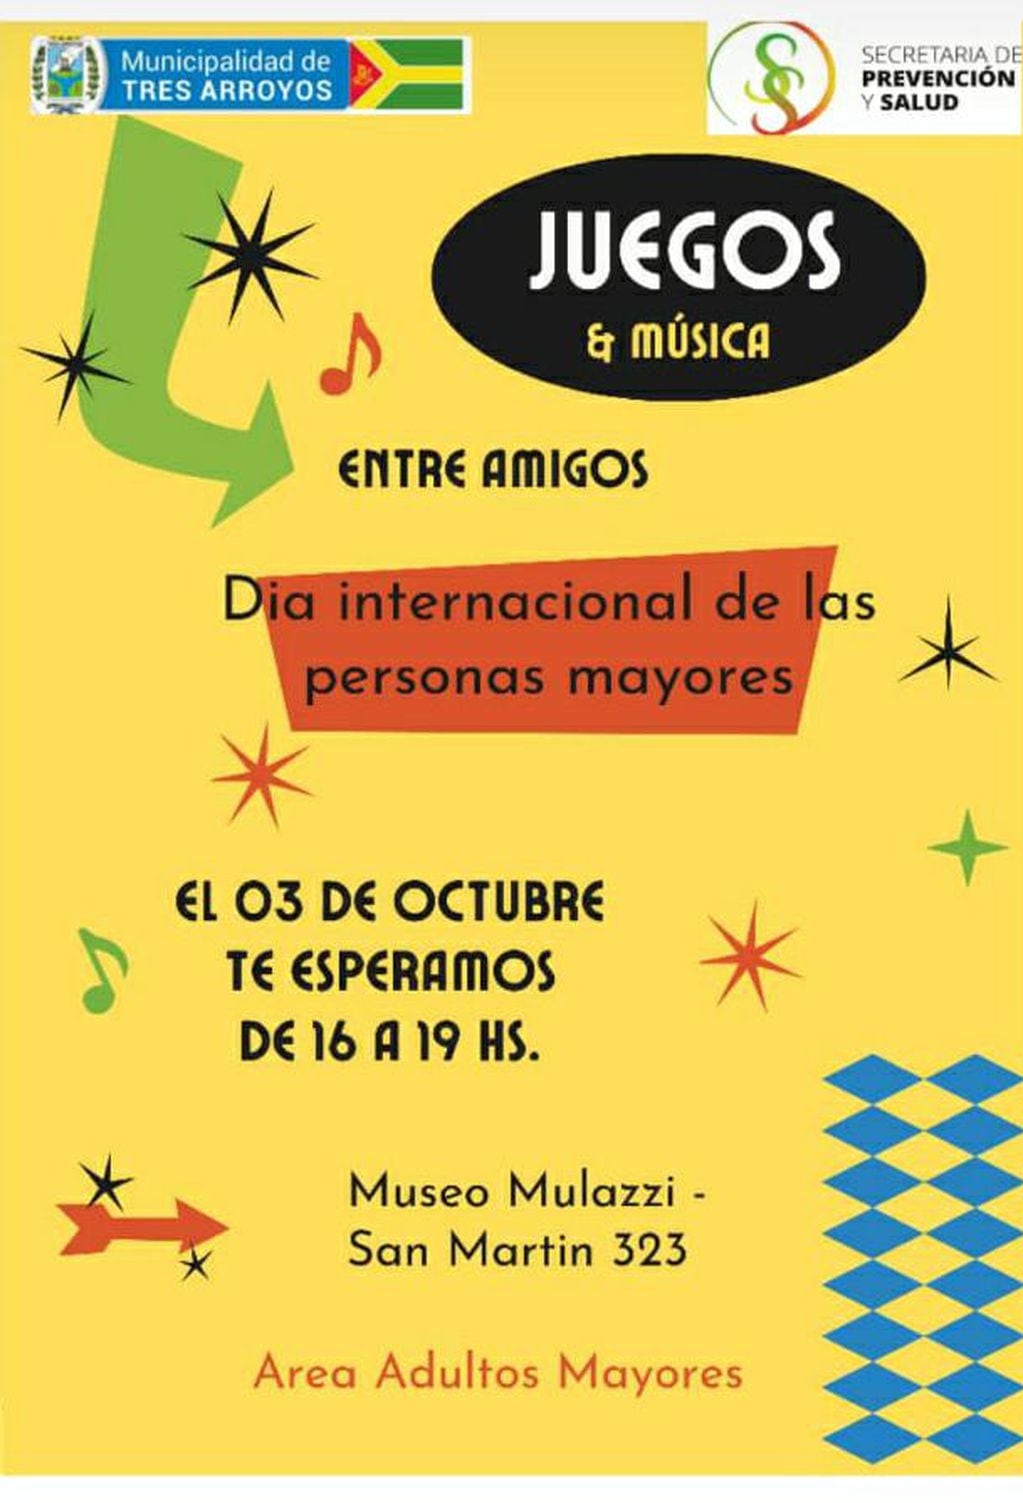 Tarde de música y juegos para adultos mayores en el Museo Mulazzi de Tres Arroyos